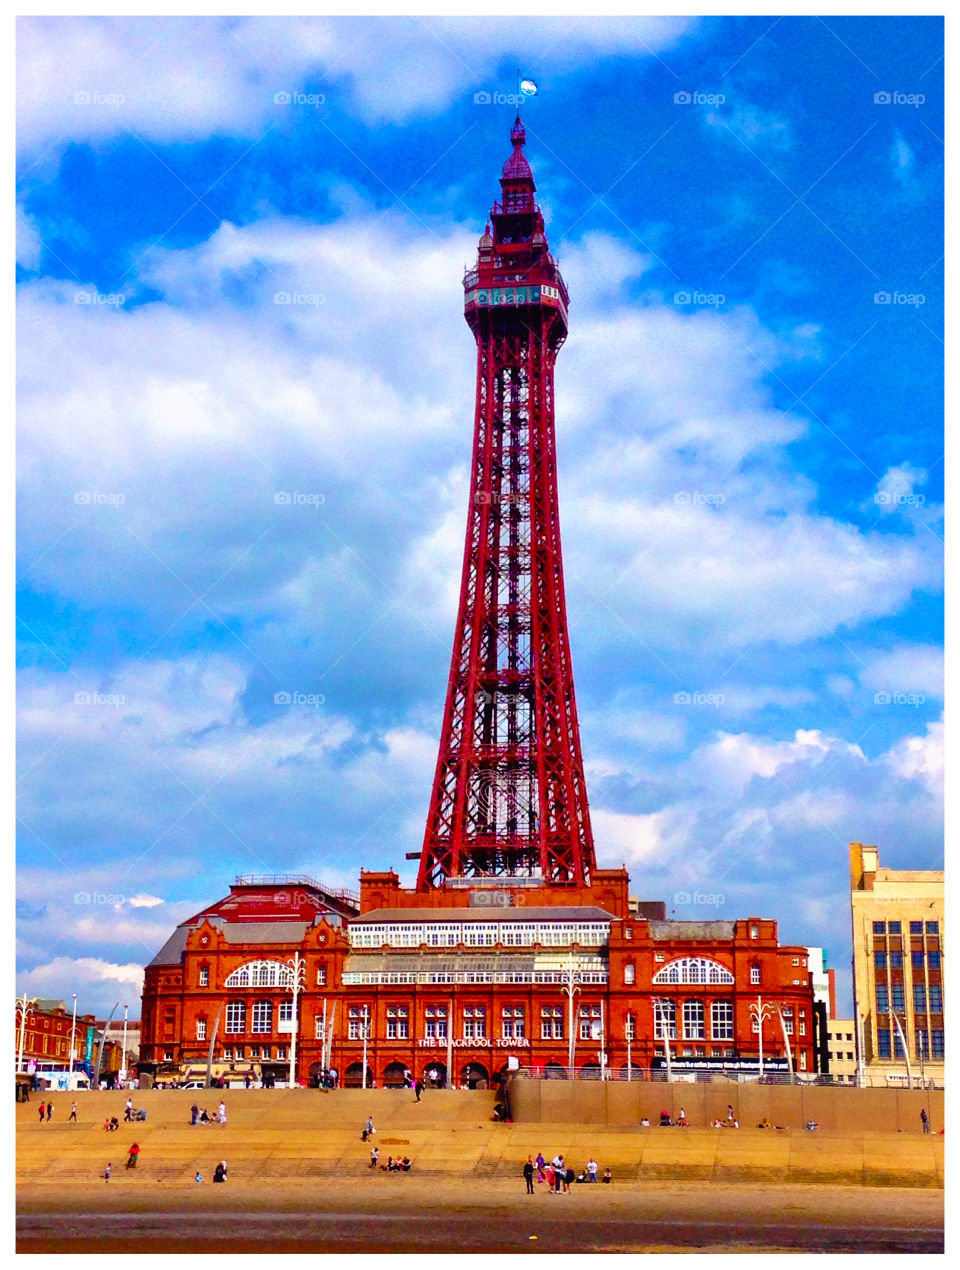 Blackpool Tower, Blackpool, Lancashire, UK